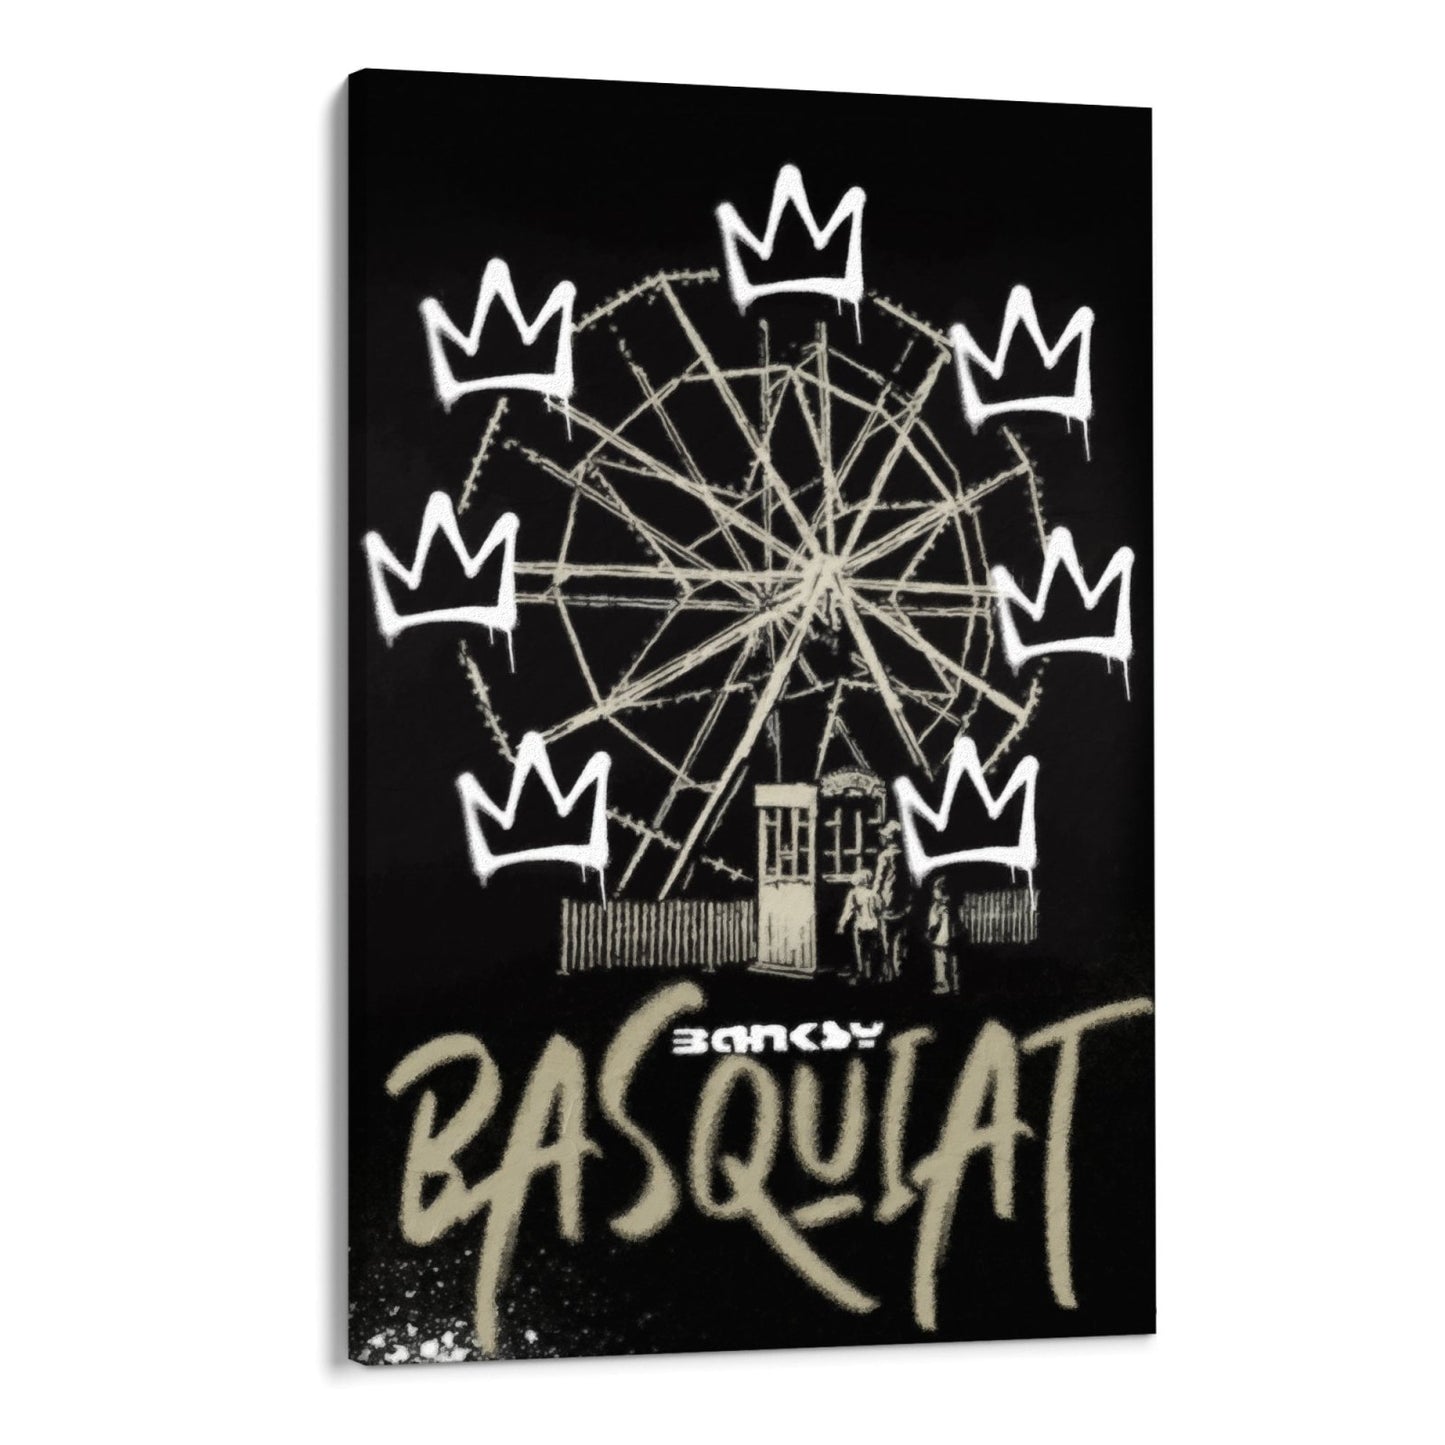 Graffiti Banksy’ego Basquiata